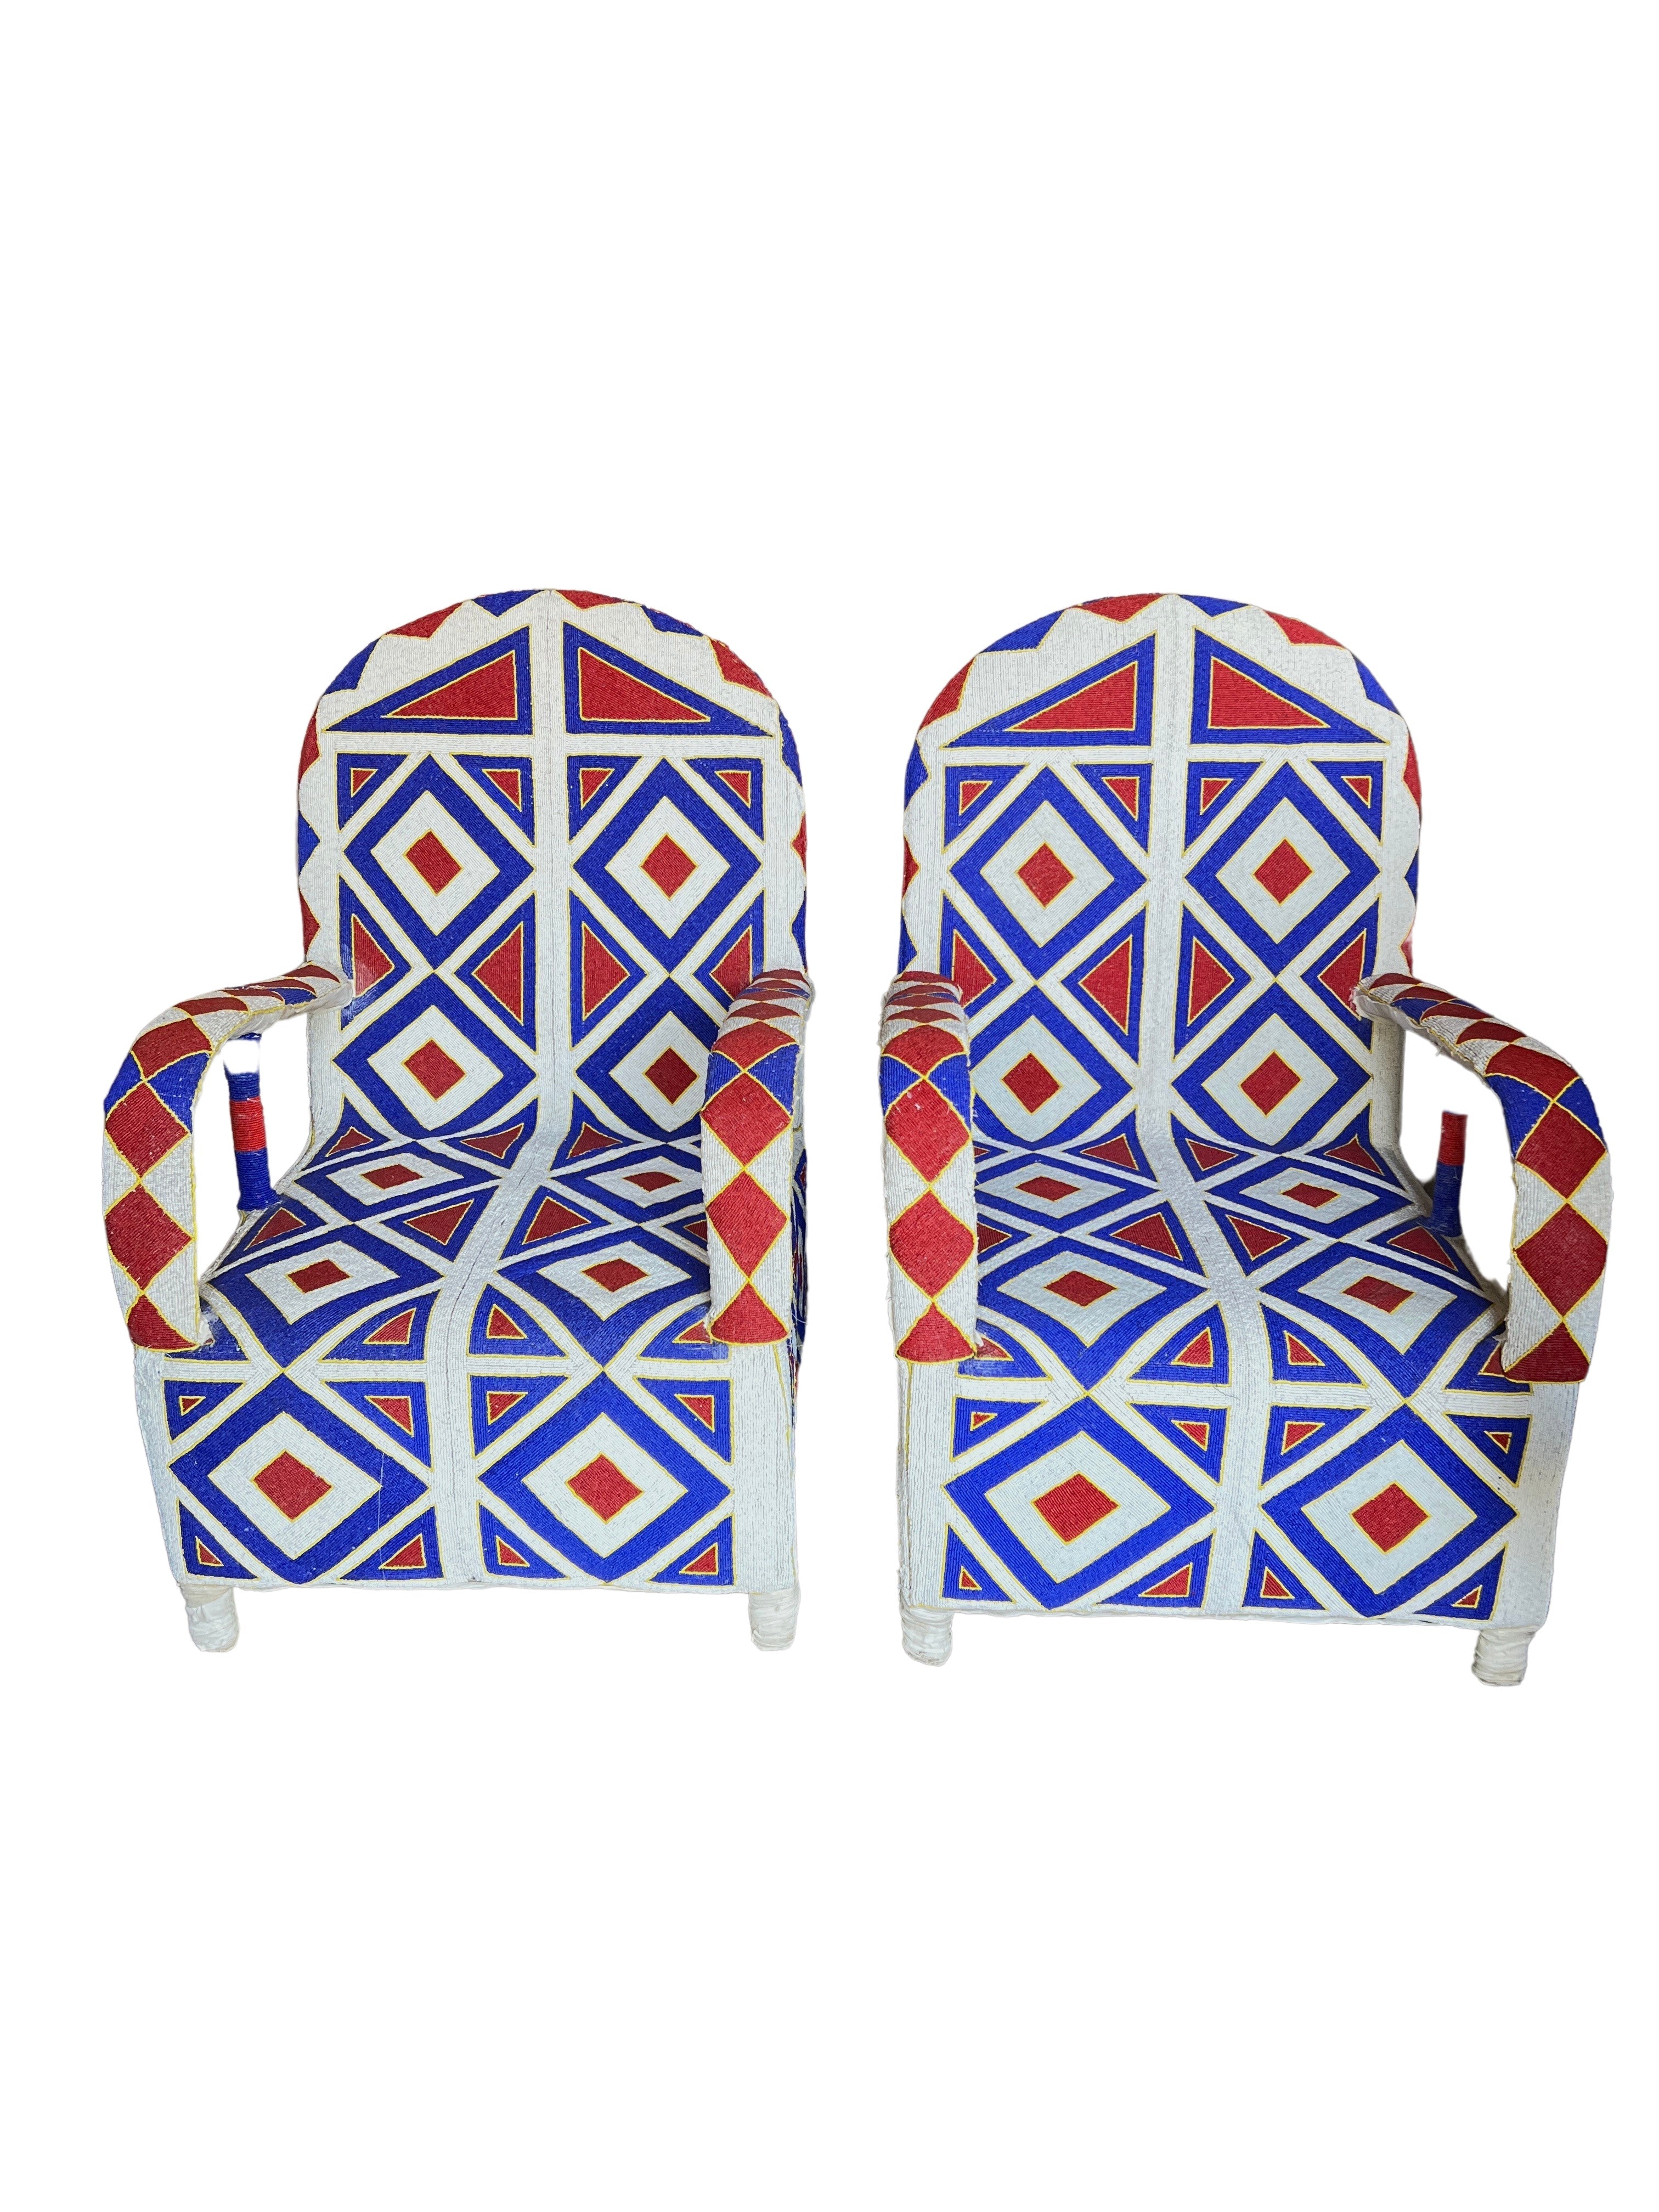 Yoruba Beaded Chairs